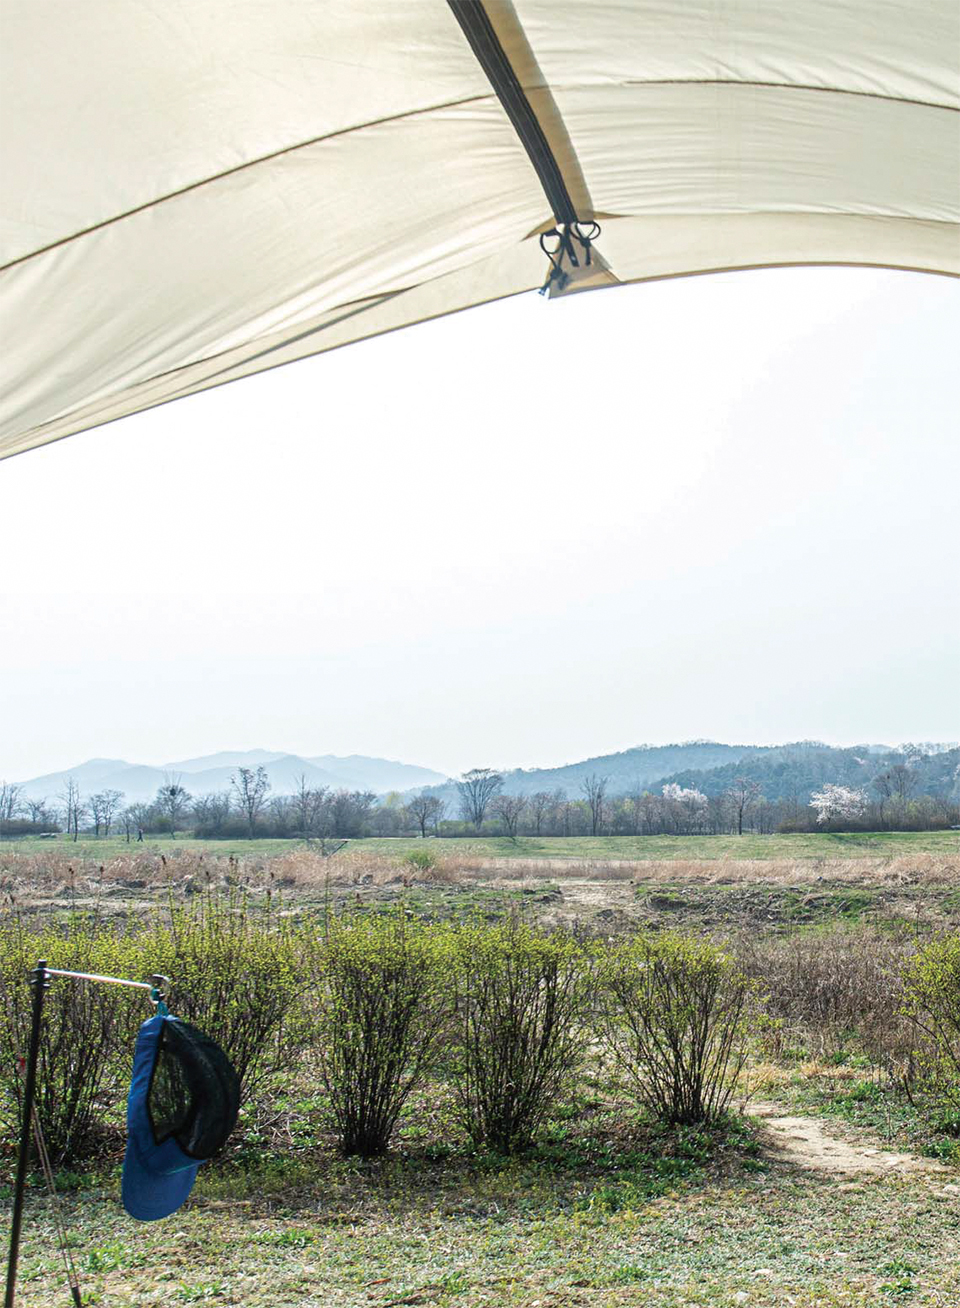 백정환, 김민진, 백종윤 가족의 
텐트에서 바라본 풍경.